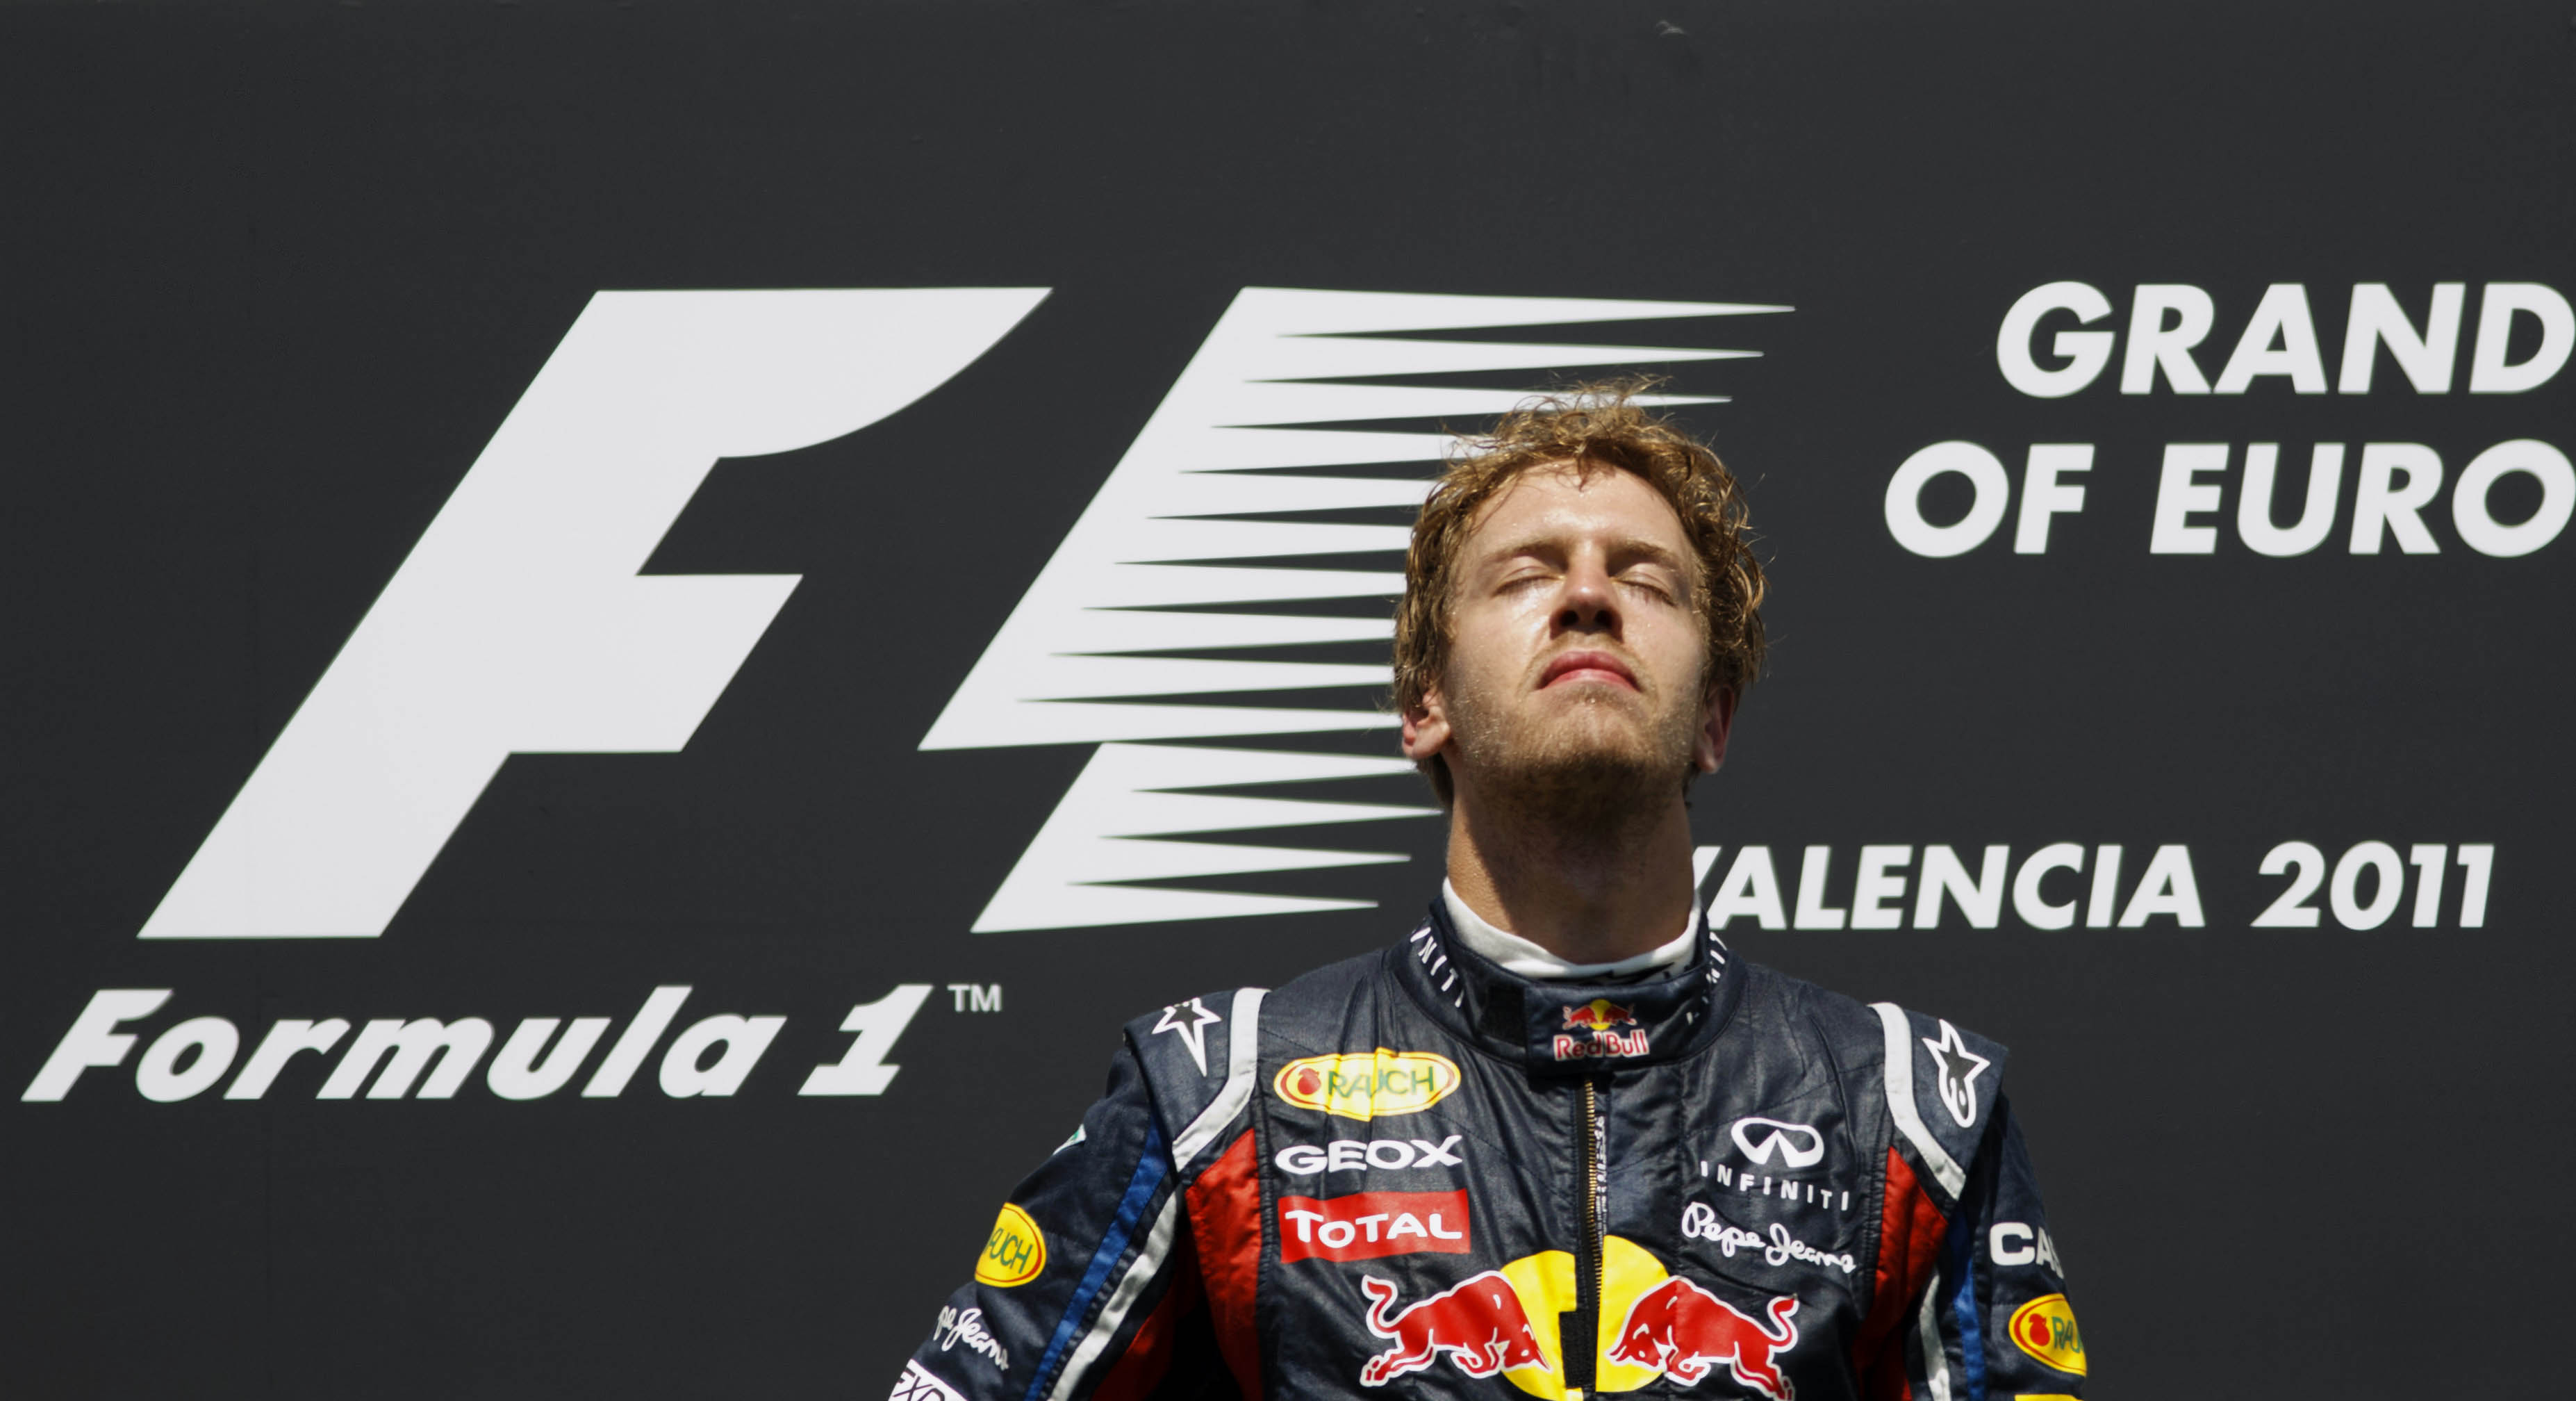 Sebastian Vettel kommer att vinna sitt andra raka mästerskap. Kan han slå landsmannen Michael Schumachers sju titlar? Mycket talar för det.